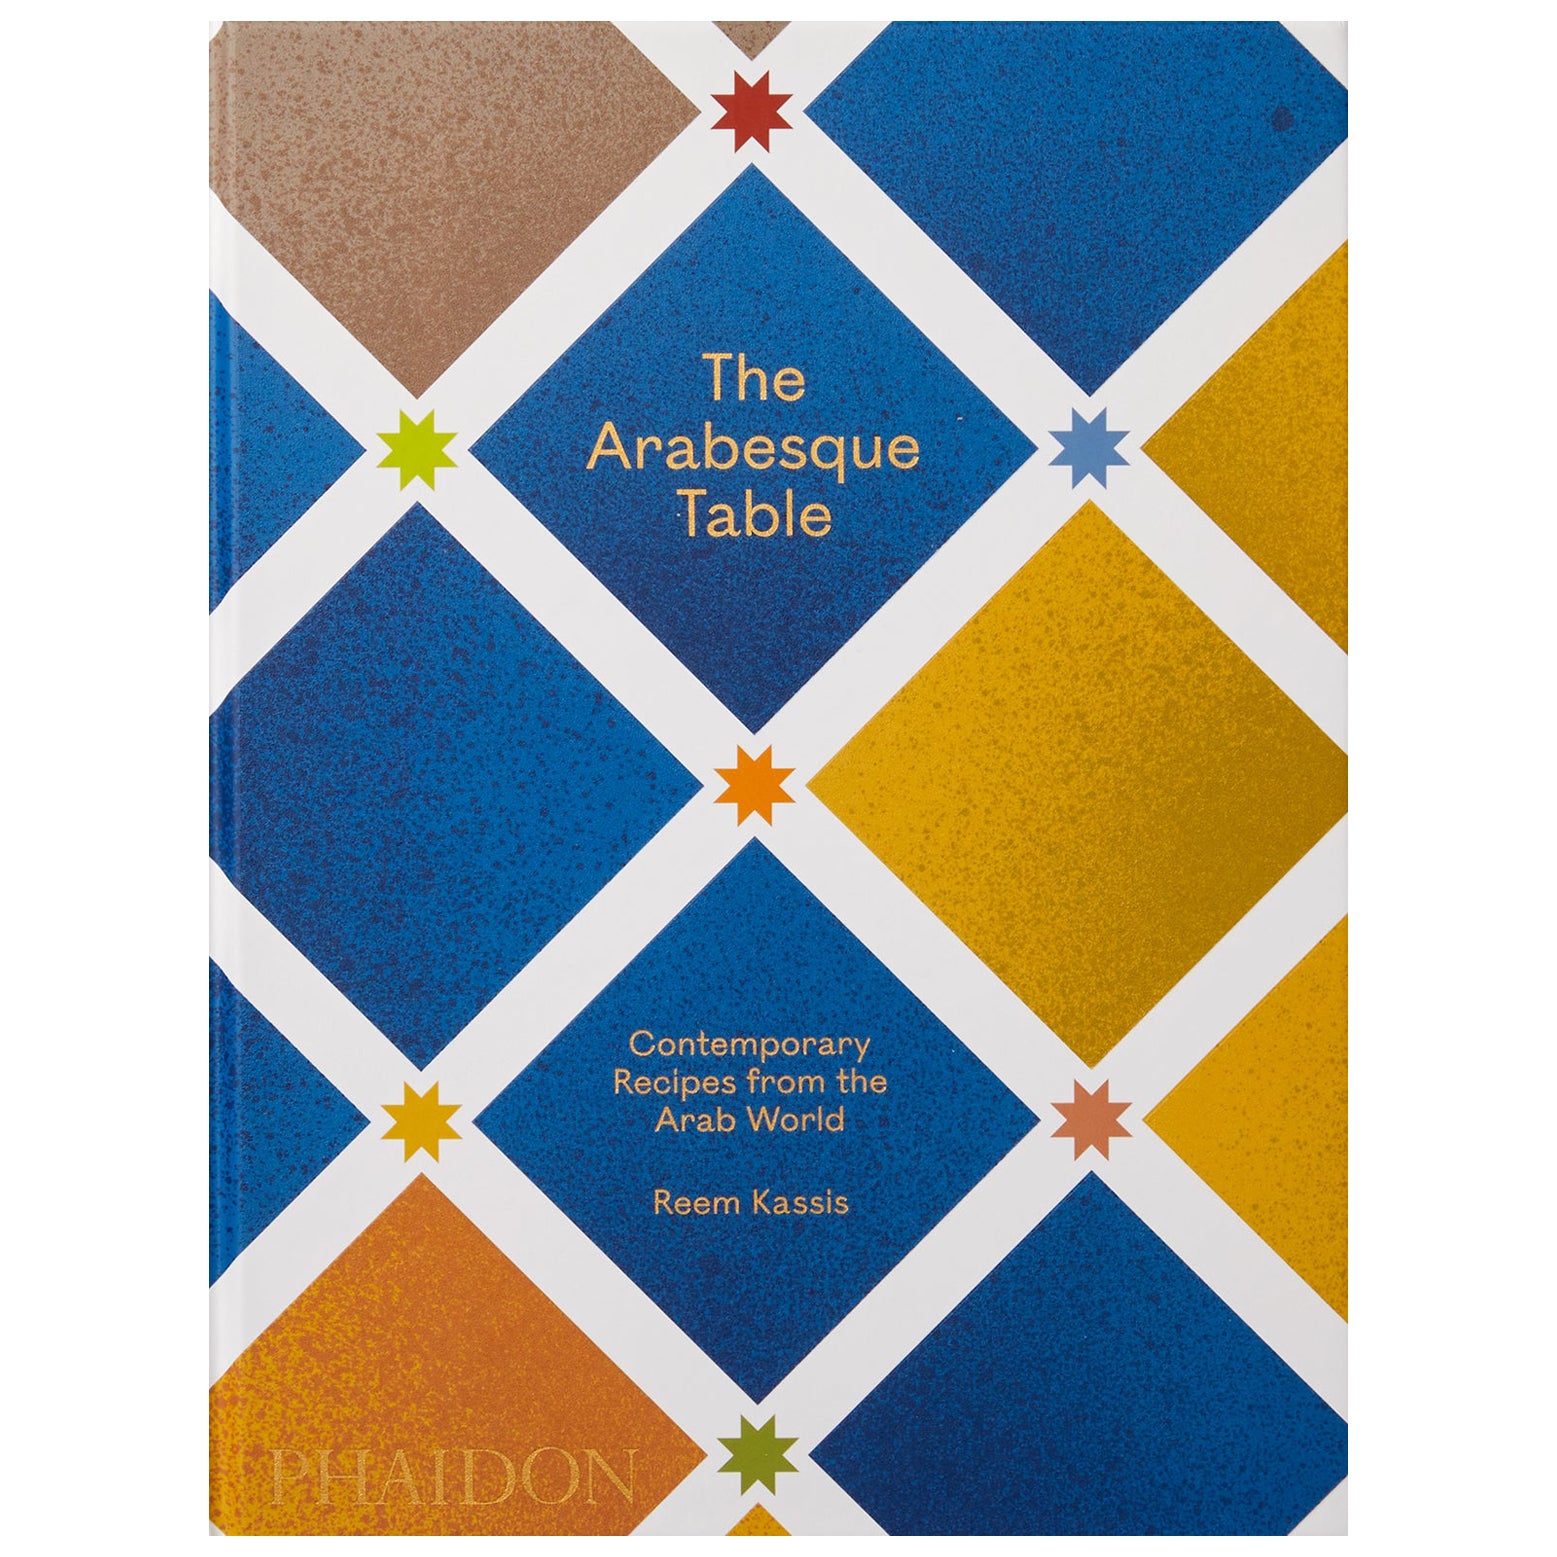 The Arabesque Table Recettes contemporaines du monde arabe